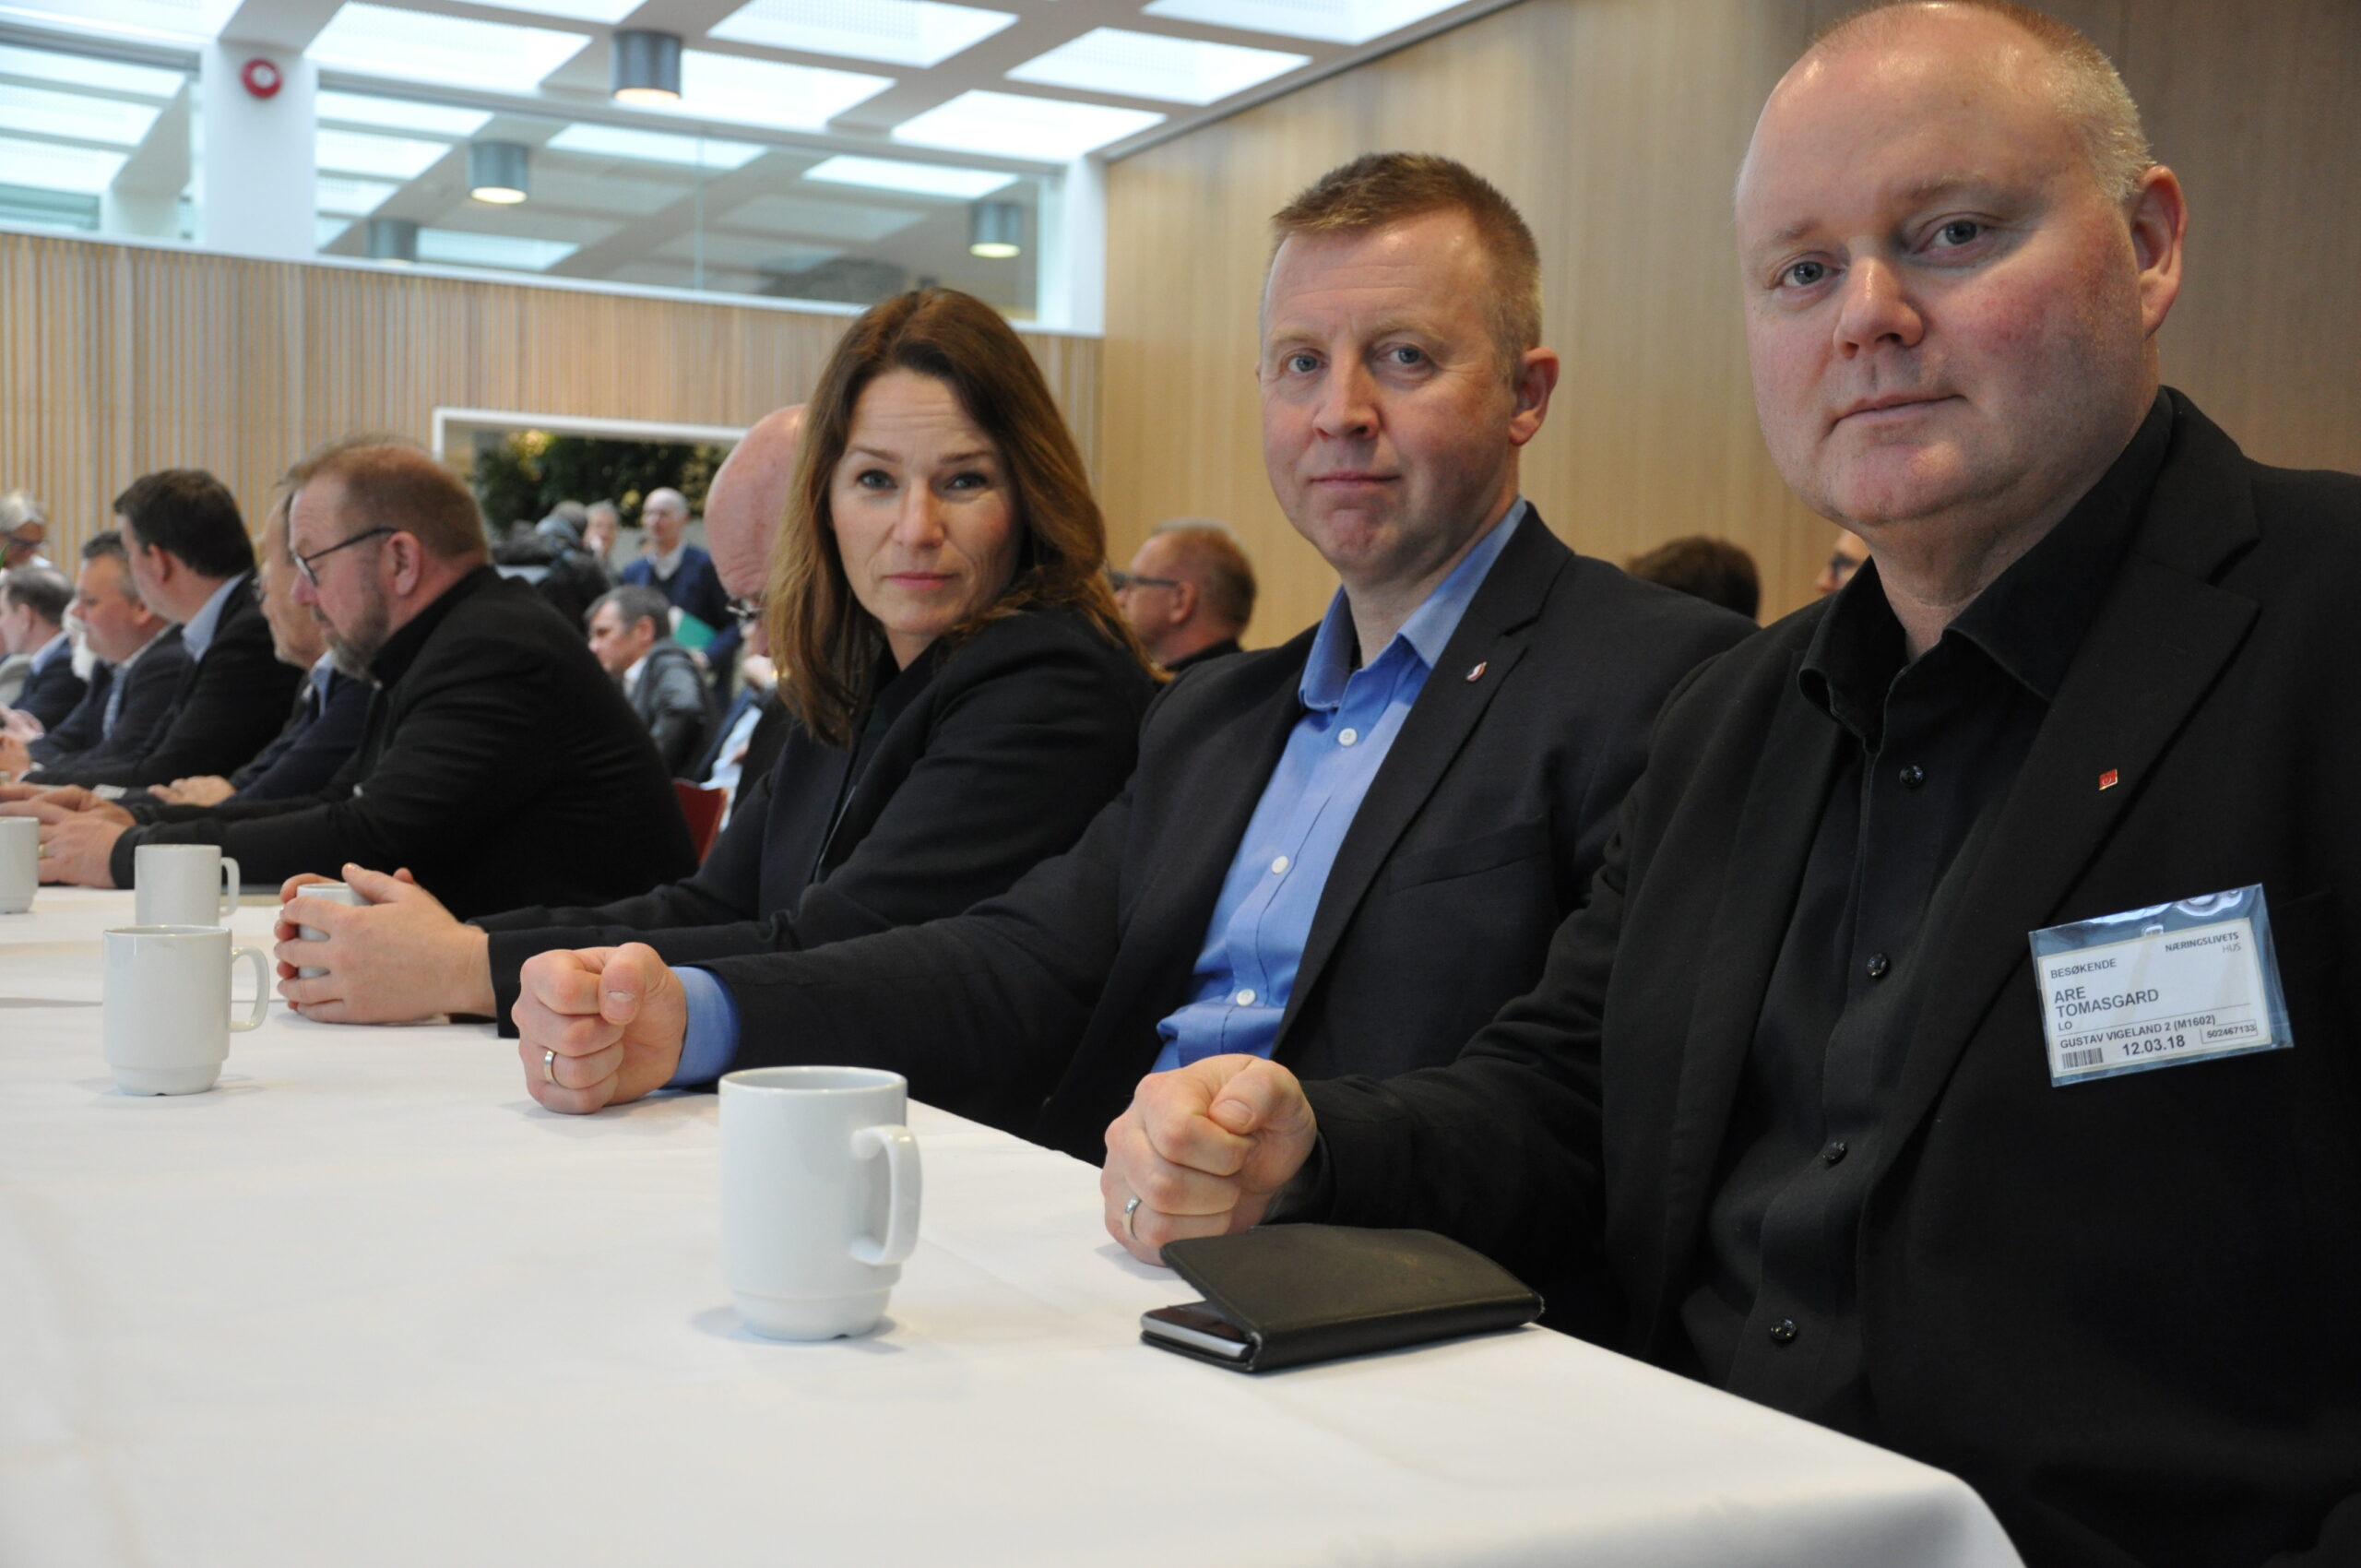 Fra venstre: HK-leder Trine Lise Sundnes, Industri Energi-leder Frode Alfheim og LO-sekretær Are Tomasgard. Bildet ble tatt 12. mars da LO overleverte kravene til NHO.